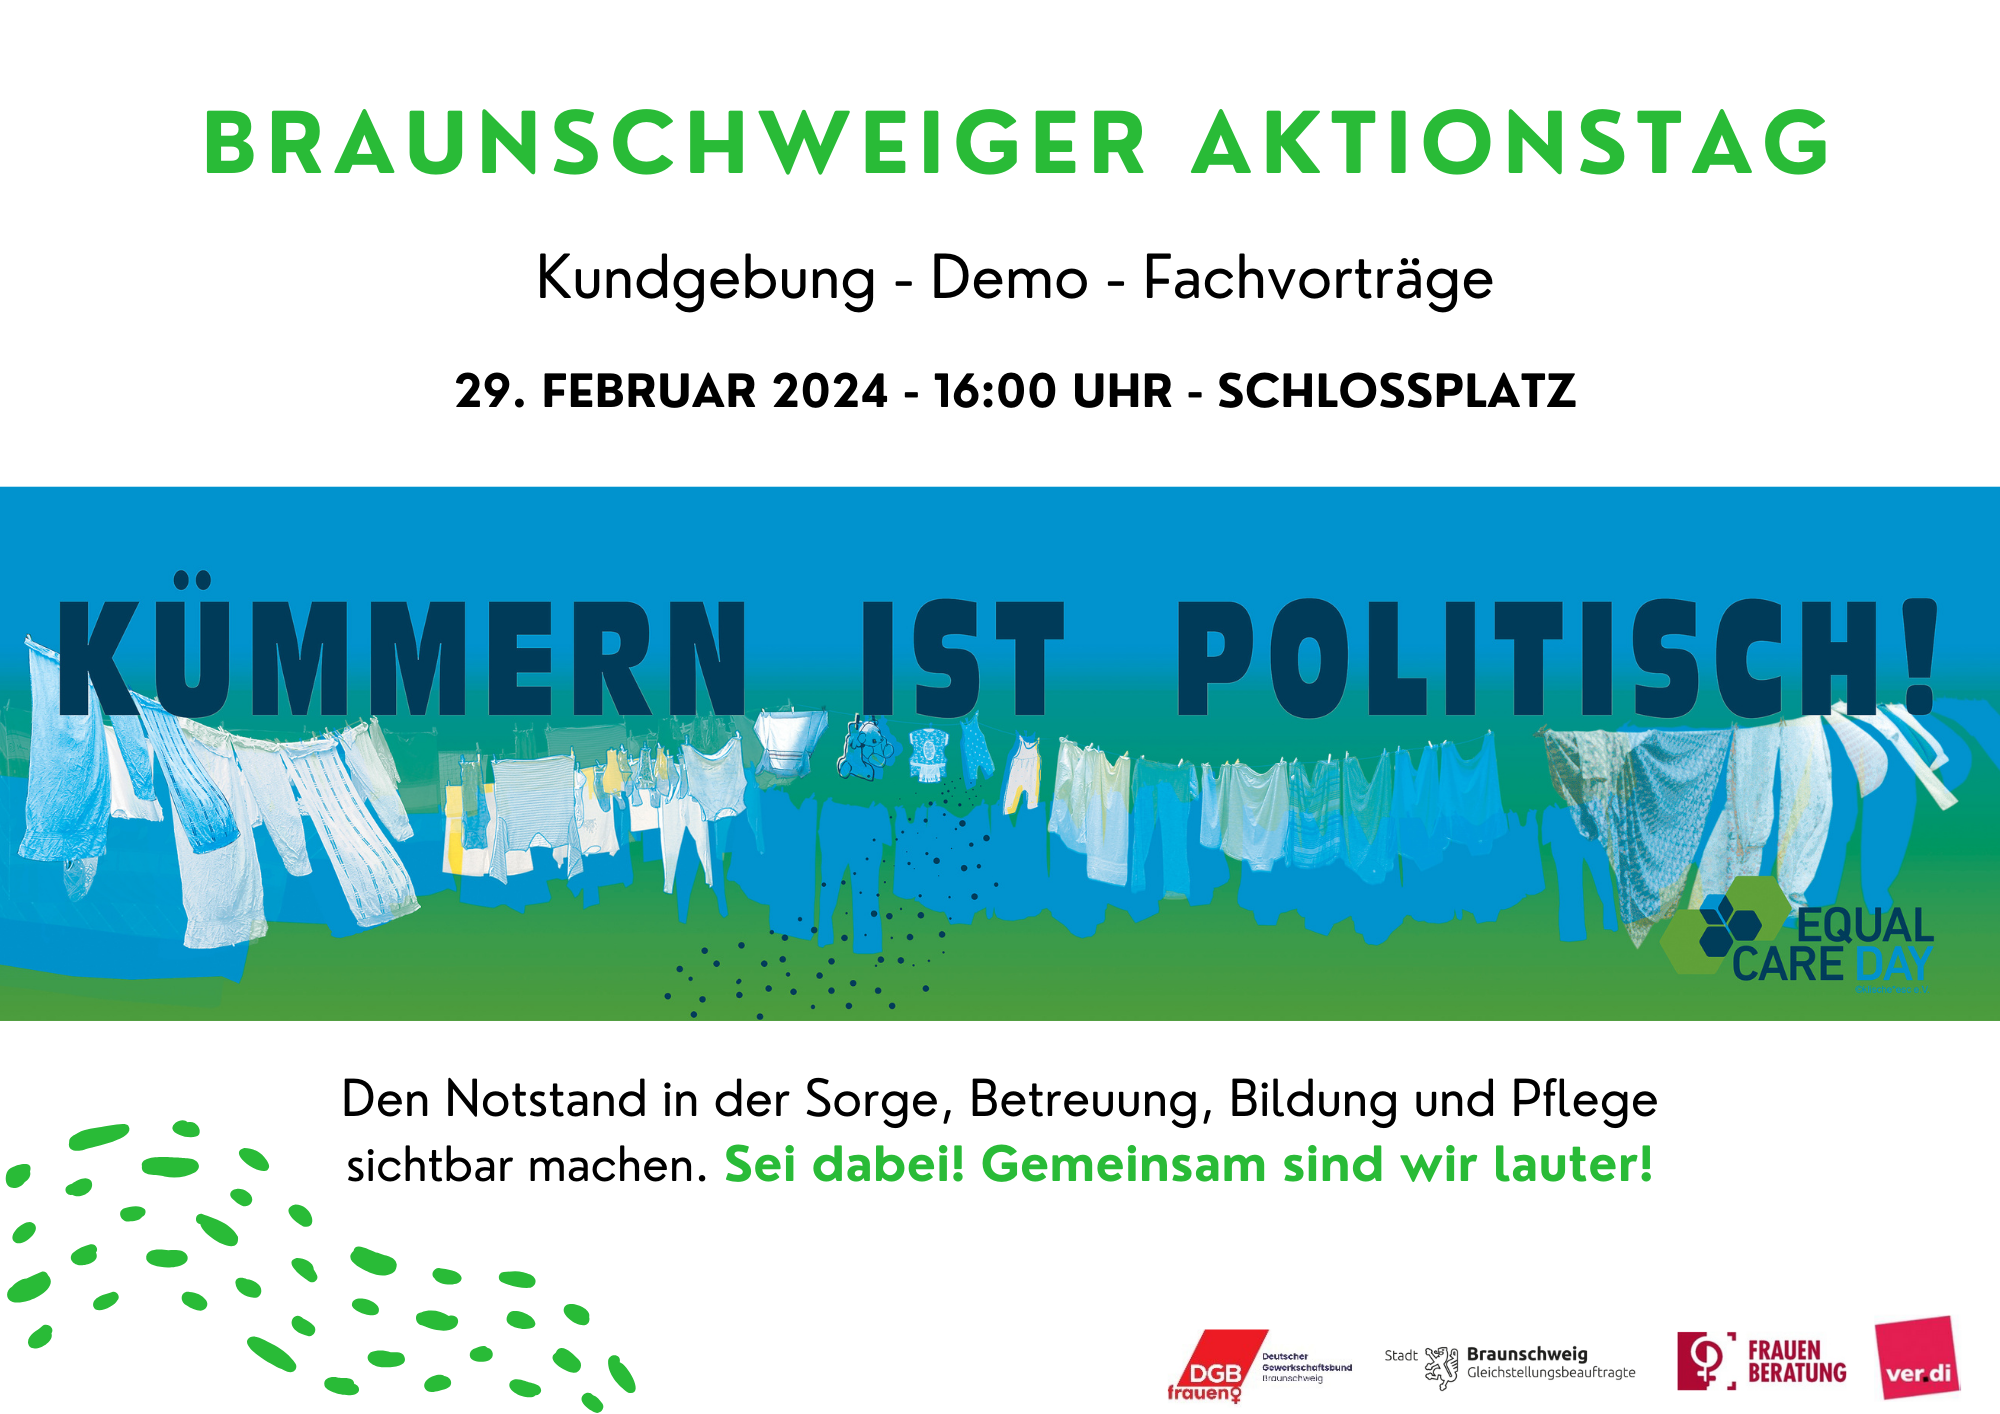 Ankündigung des Braunschweiger Aktionstages Motto: Kümmern ist politisch!